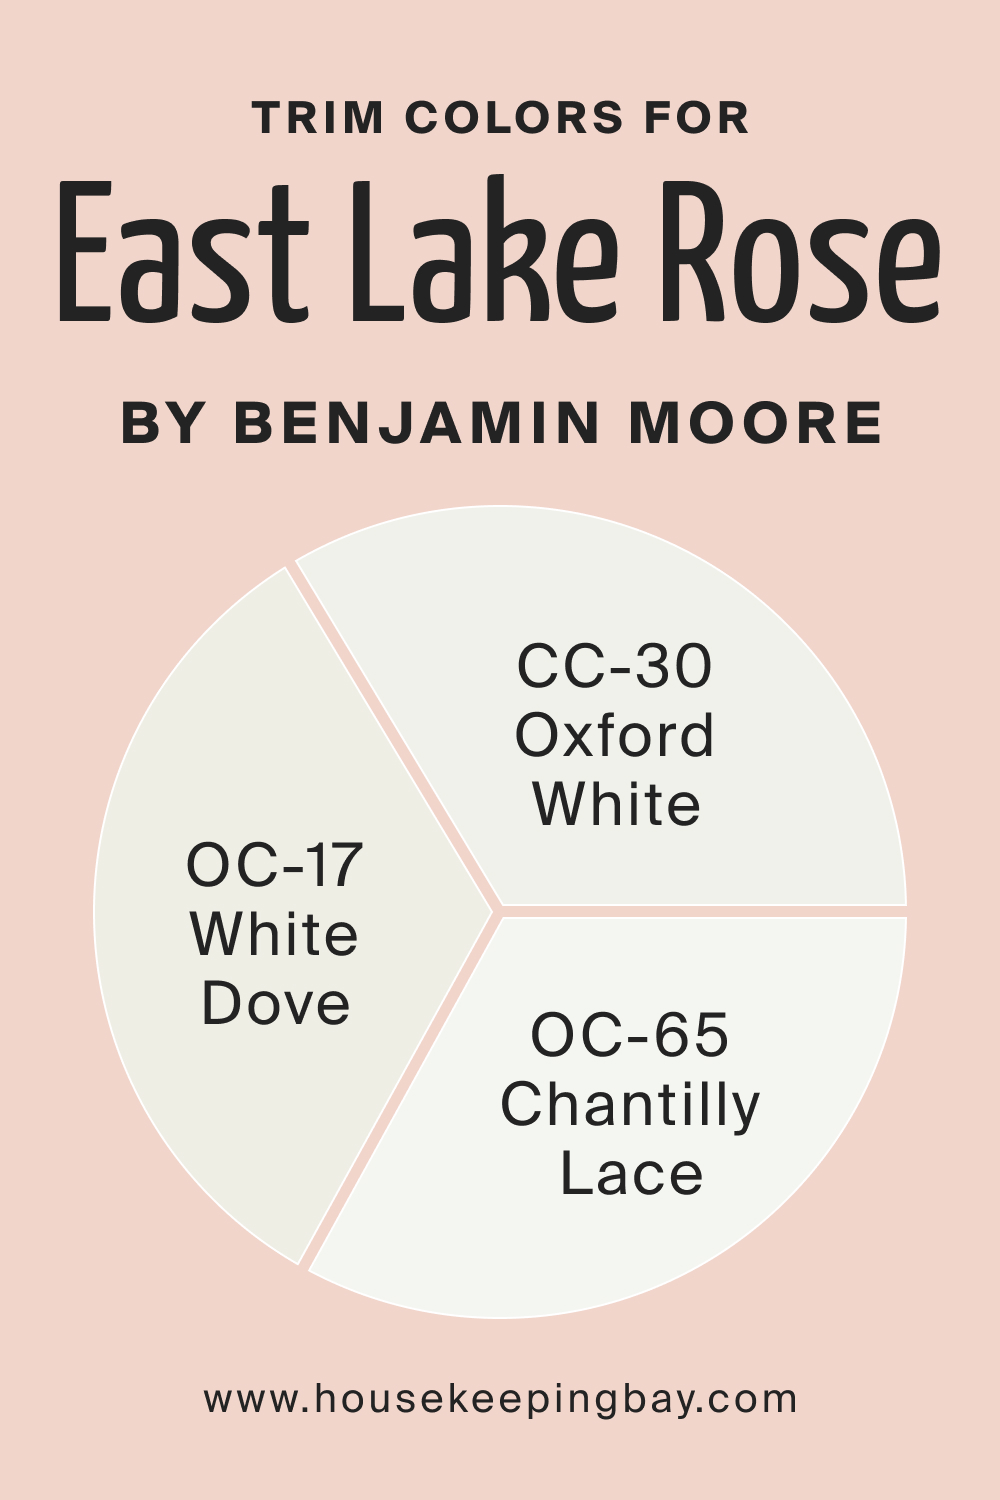 Trim Colors for BM East Lake Rose 043 by Benjamin Moore